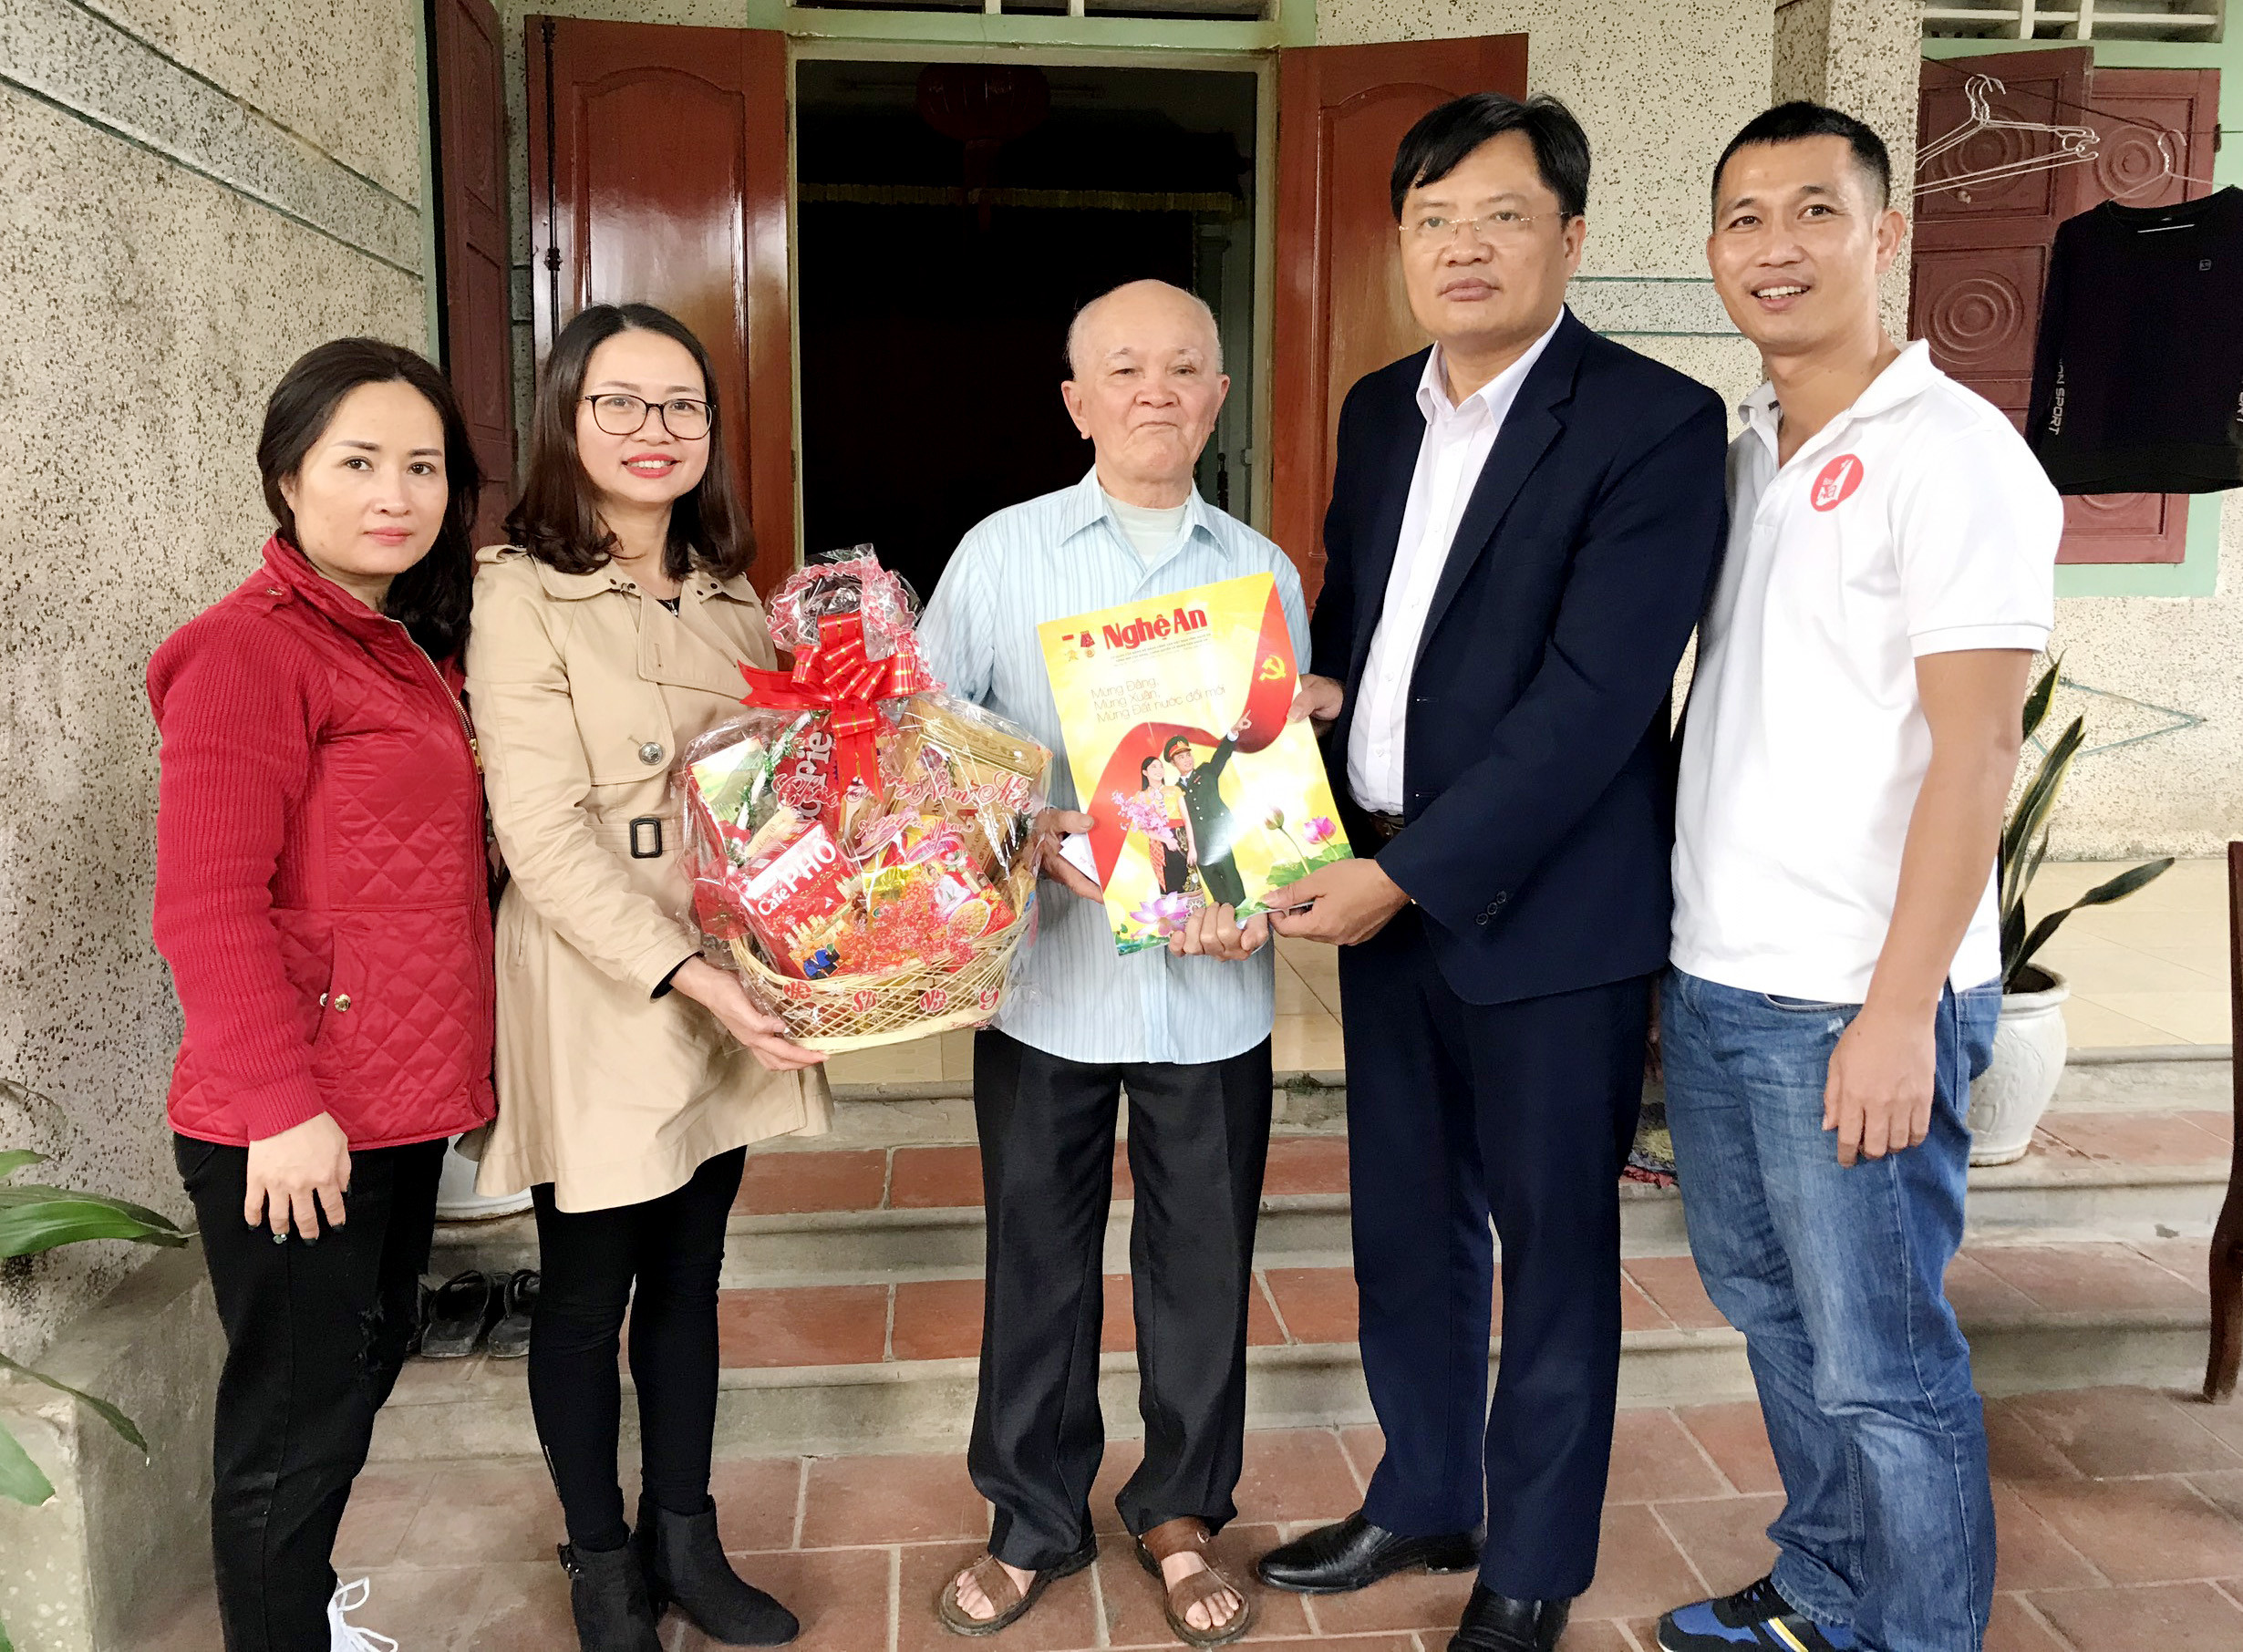 Đoàn cán bộ Báo Nghệ An tặng quà cho ông Thái Ngô Dương, nguyên TBT Báo Nghệ An. Ảnh: P.B